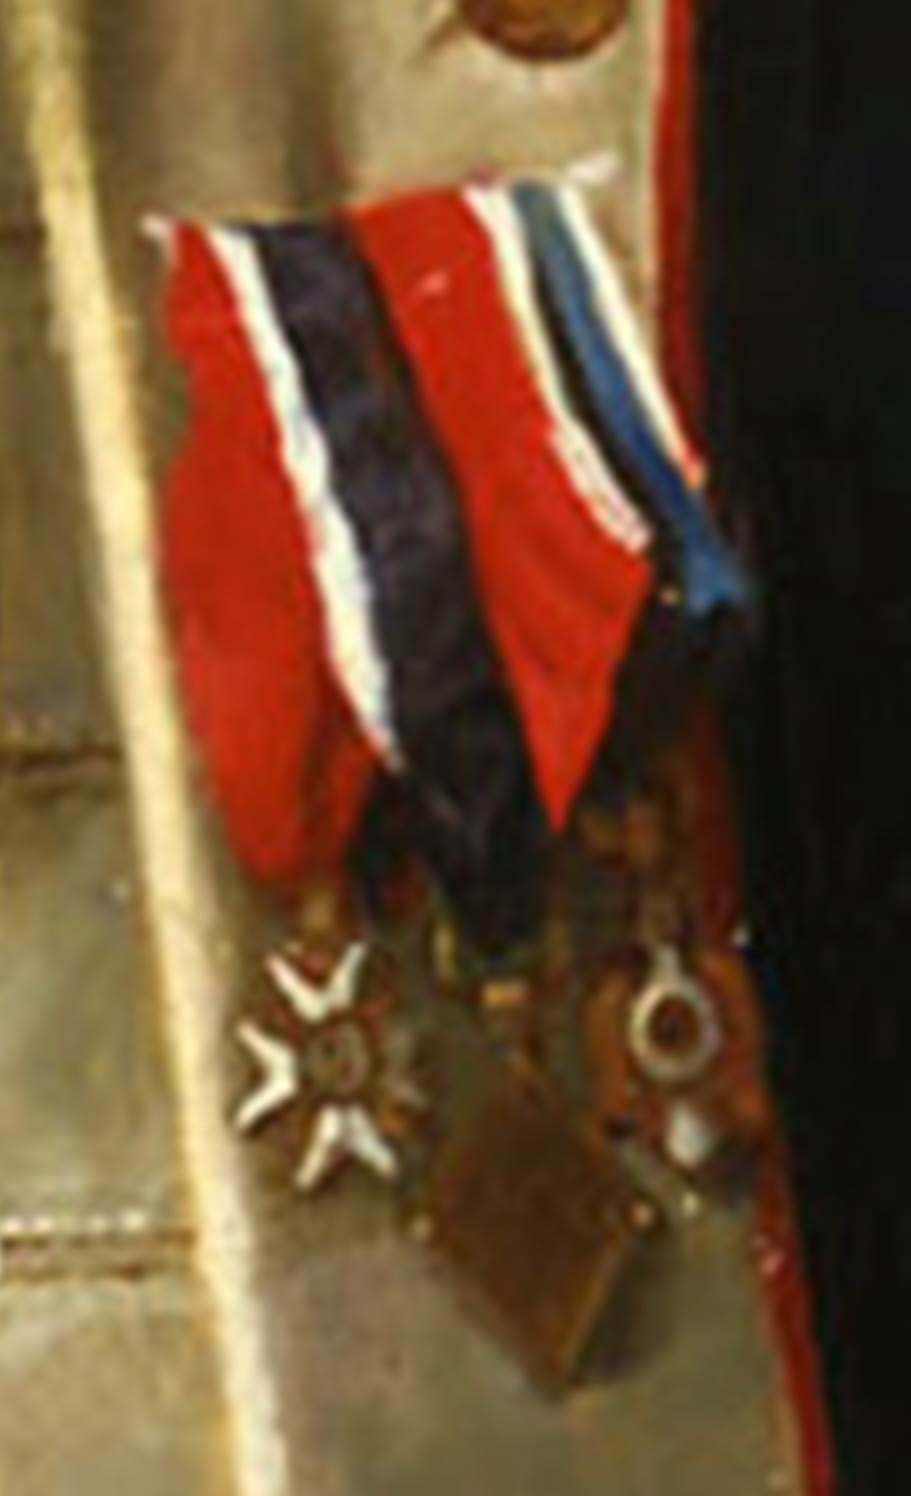 Le point sur l'épée uniforme d'officier d'infanterie modèle 1791 - Page 2 Image200